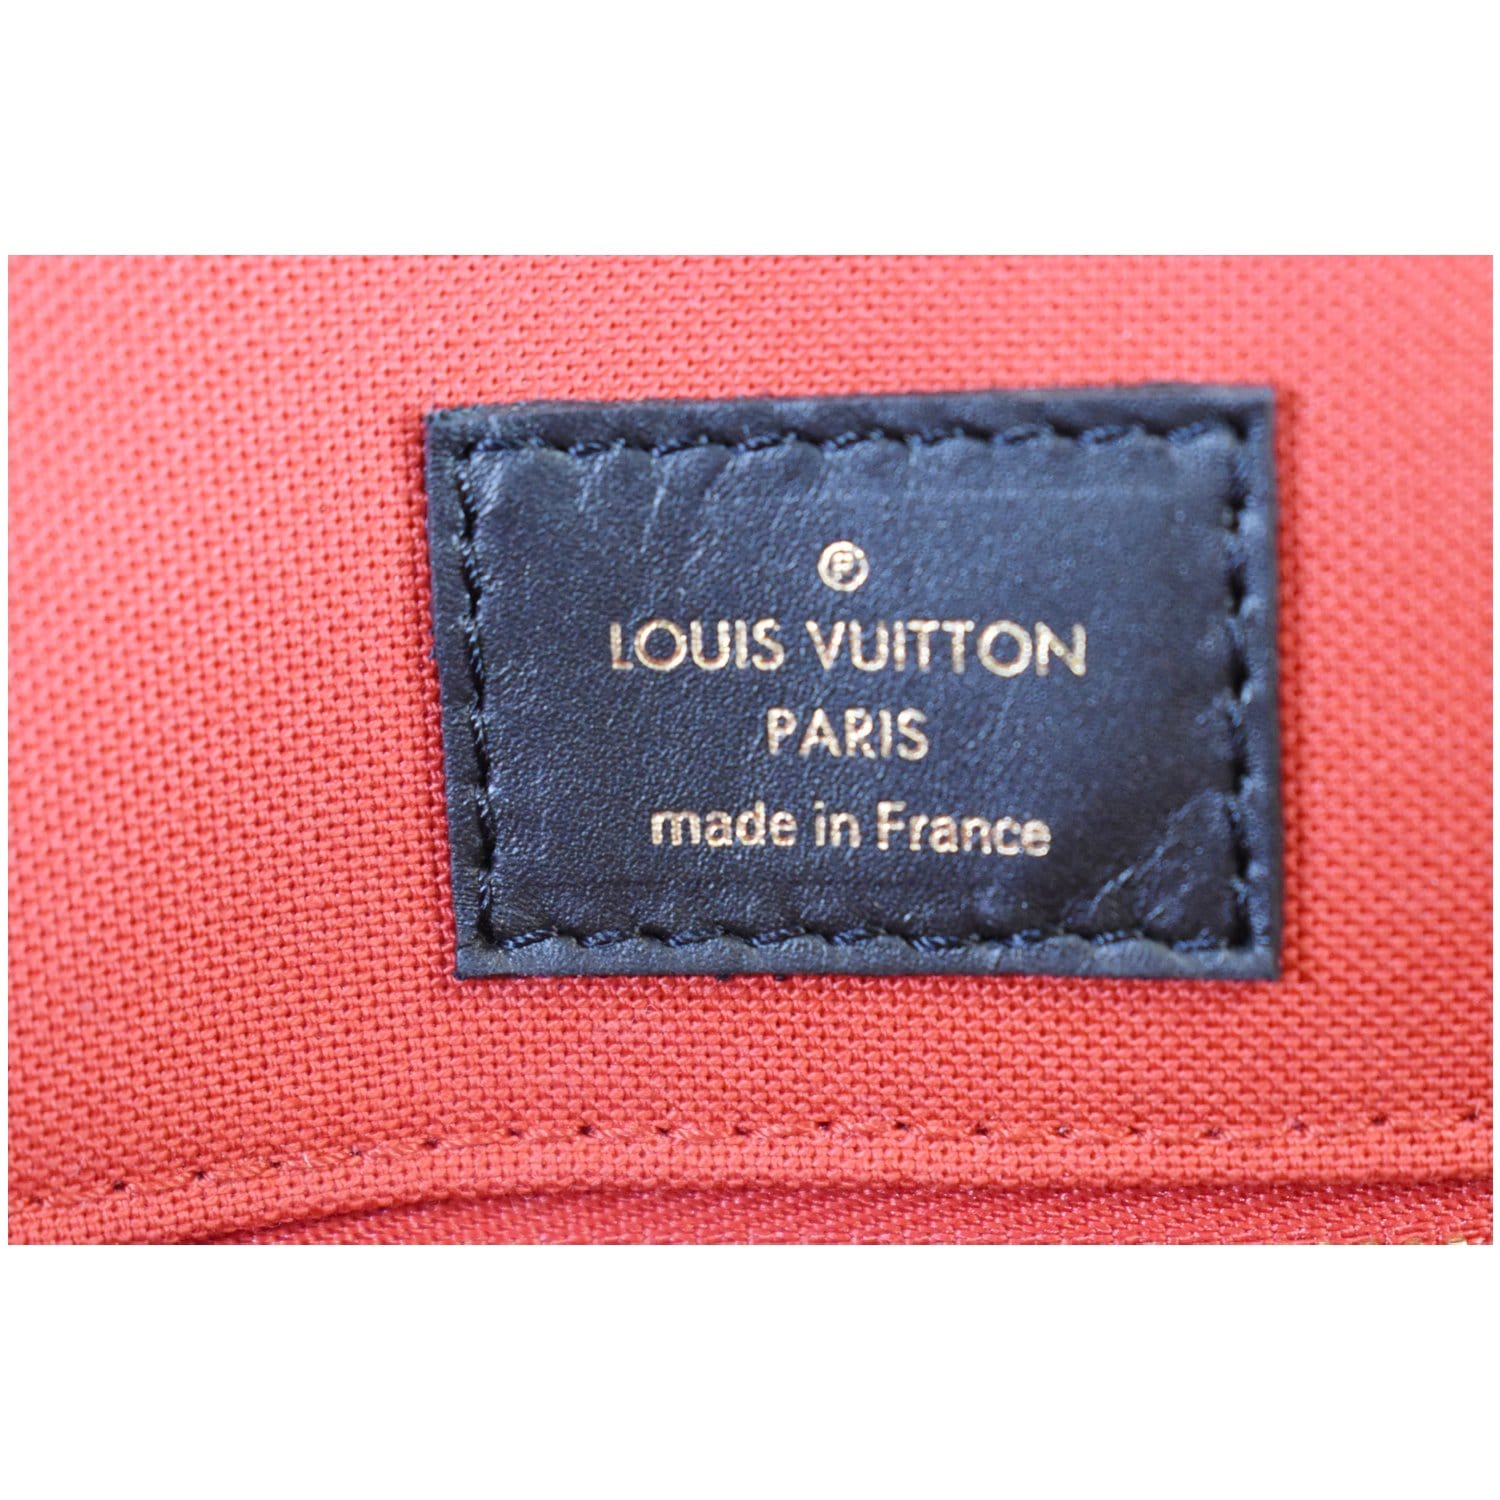 Louis Vuitton OnTheGo - огромный выбор по лучшим ценам